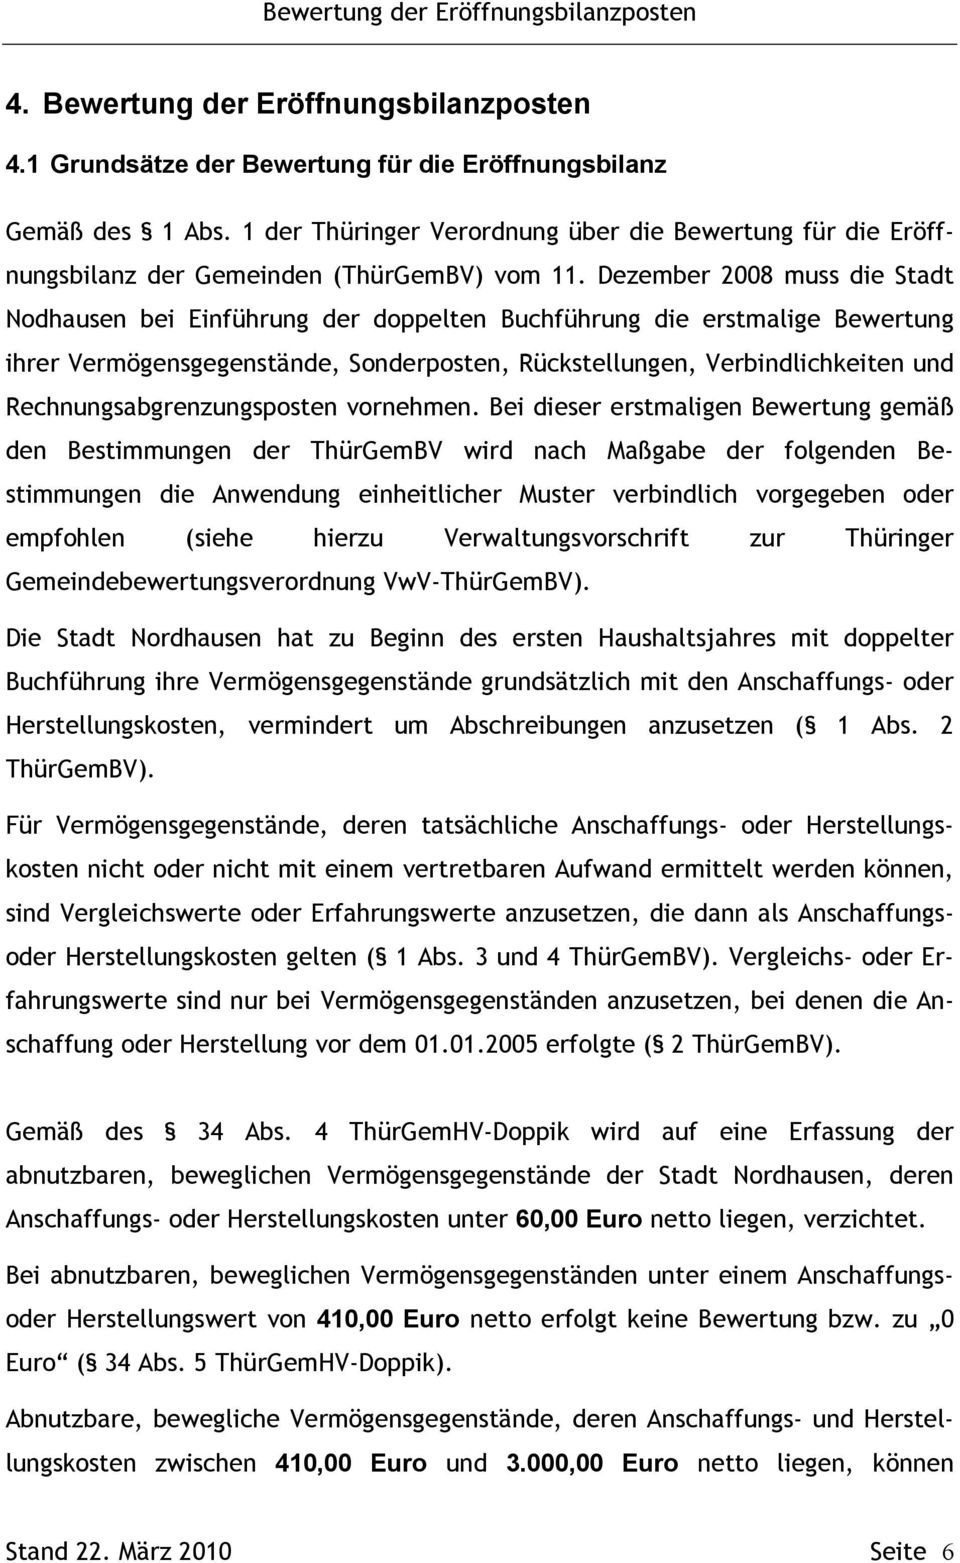 Dezember 2008 muss die Stadt Nodhausen bei Einführung der doppelten Buchführung die erstmalige Bewertung ihrer Vermögensgegenstände, Sonderposten, Rückstellungen, Verbindlichkeiten und